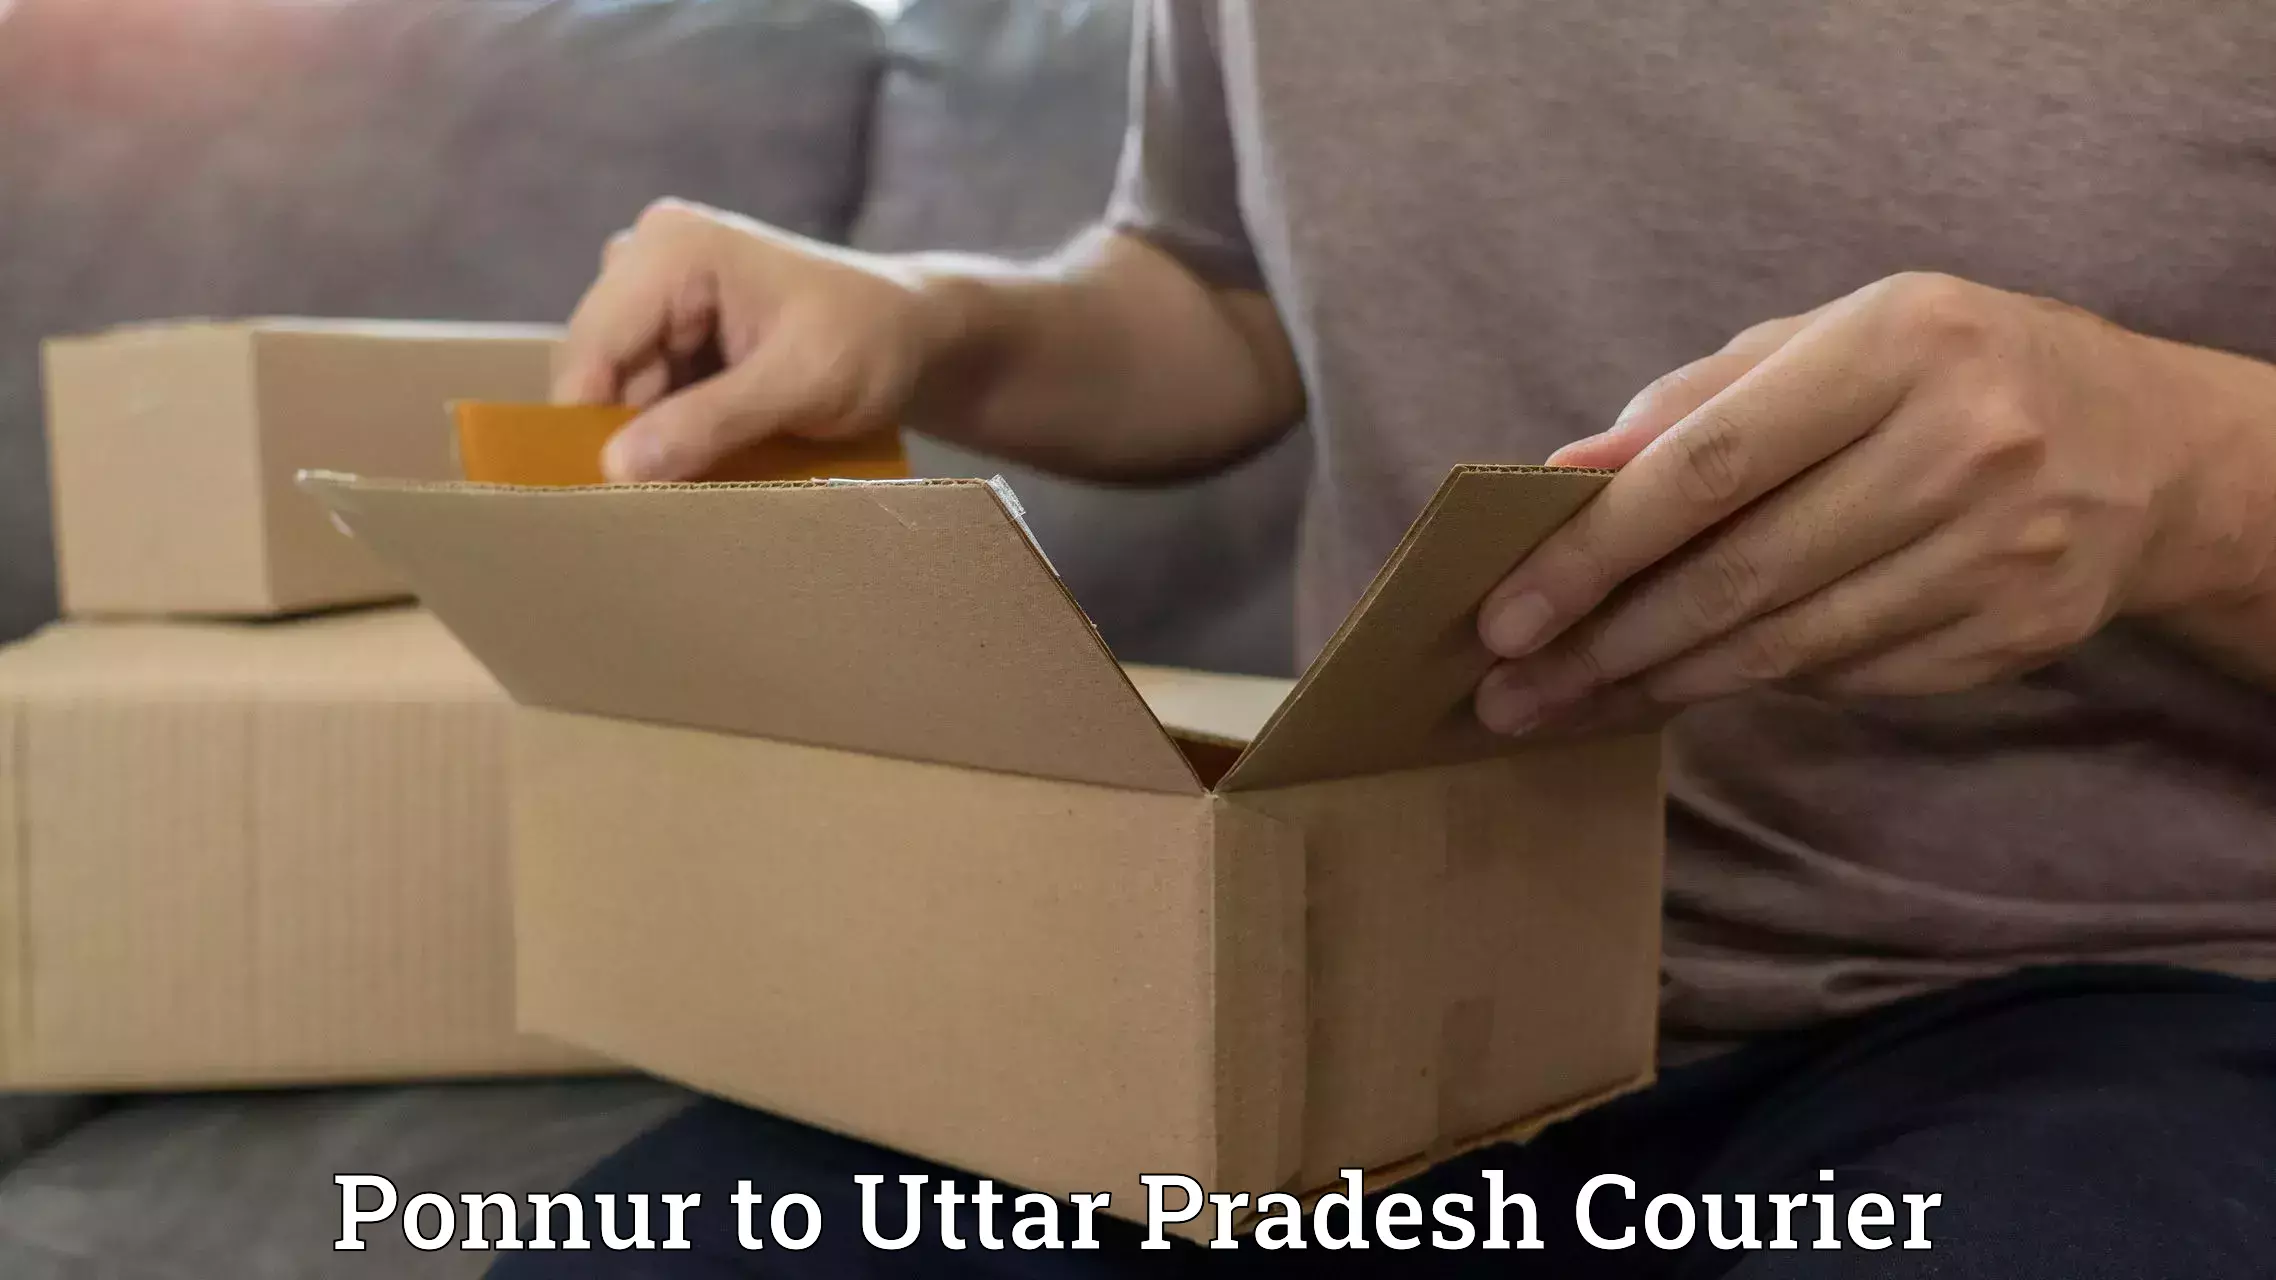 Personalized courier experiences Ponnur to Varanasi